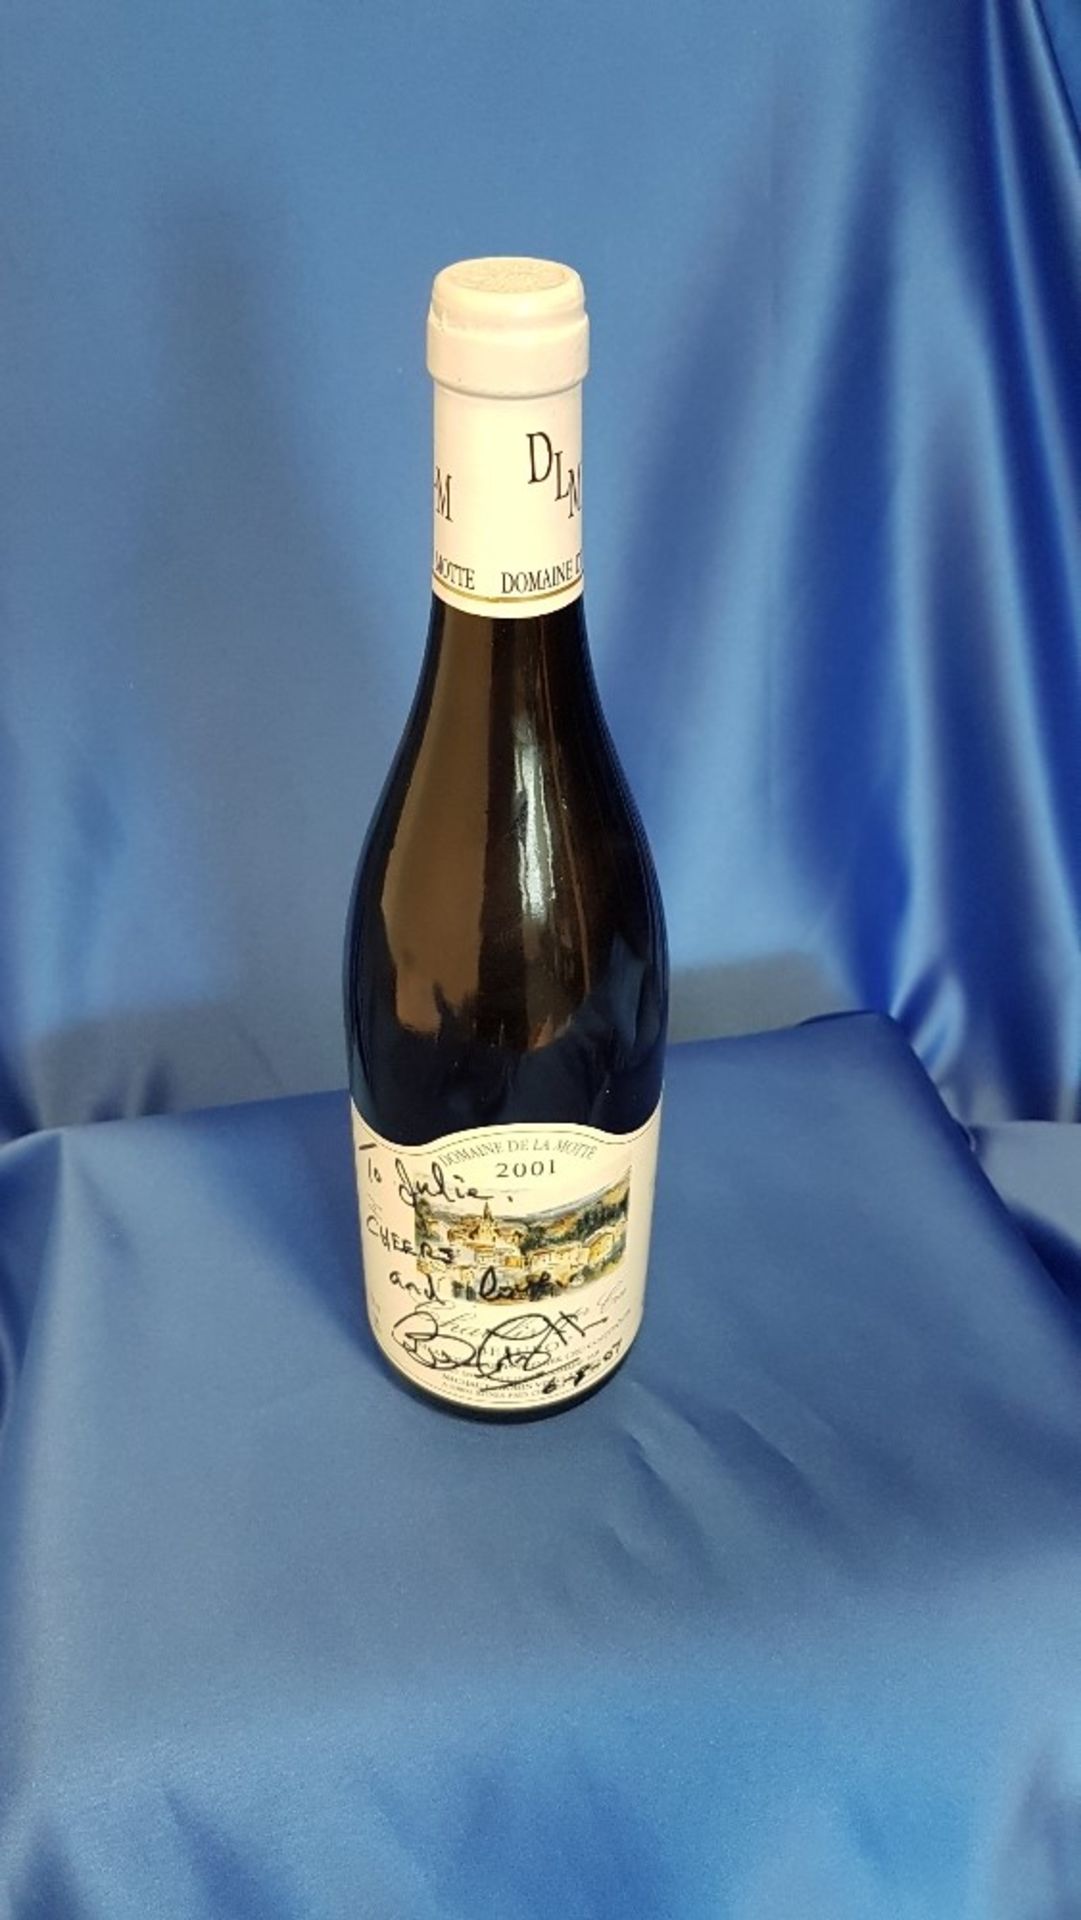 2001 Domaine De La Motte Chablis Wine, autographed by Bruce Forsyth - Image 2 of 2